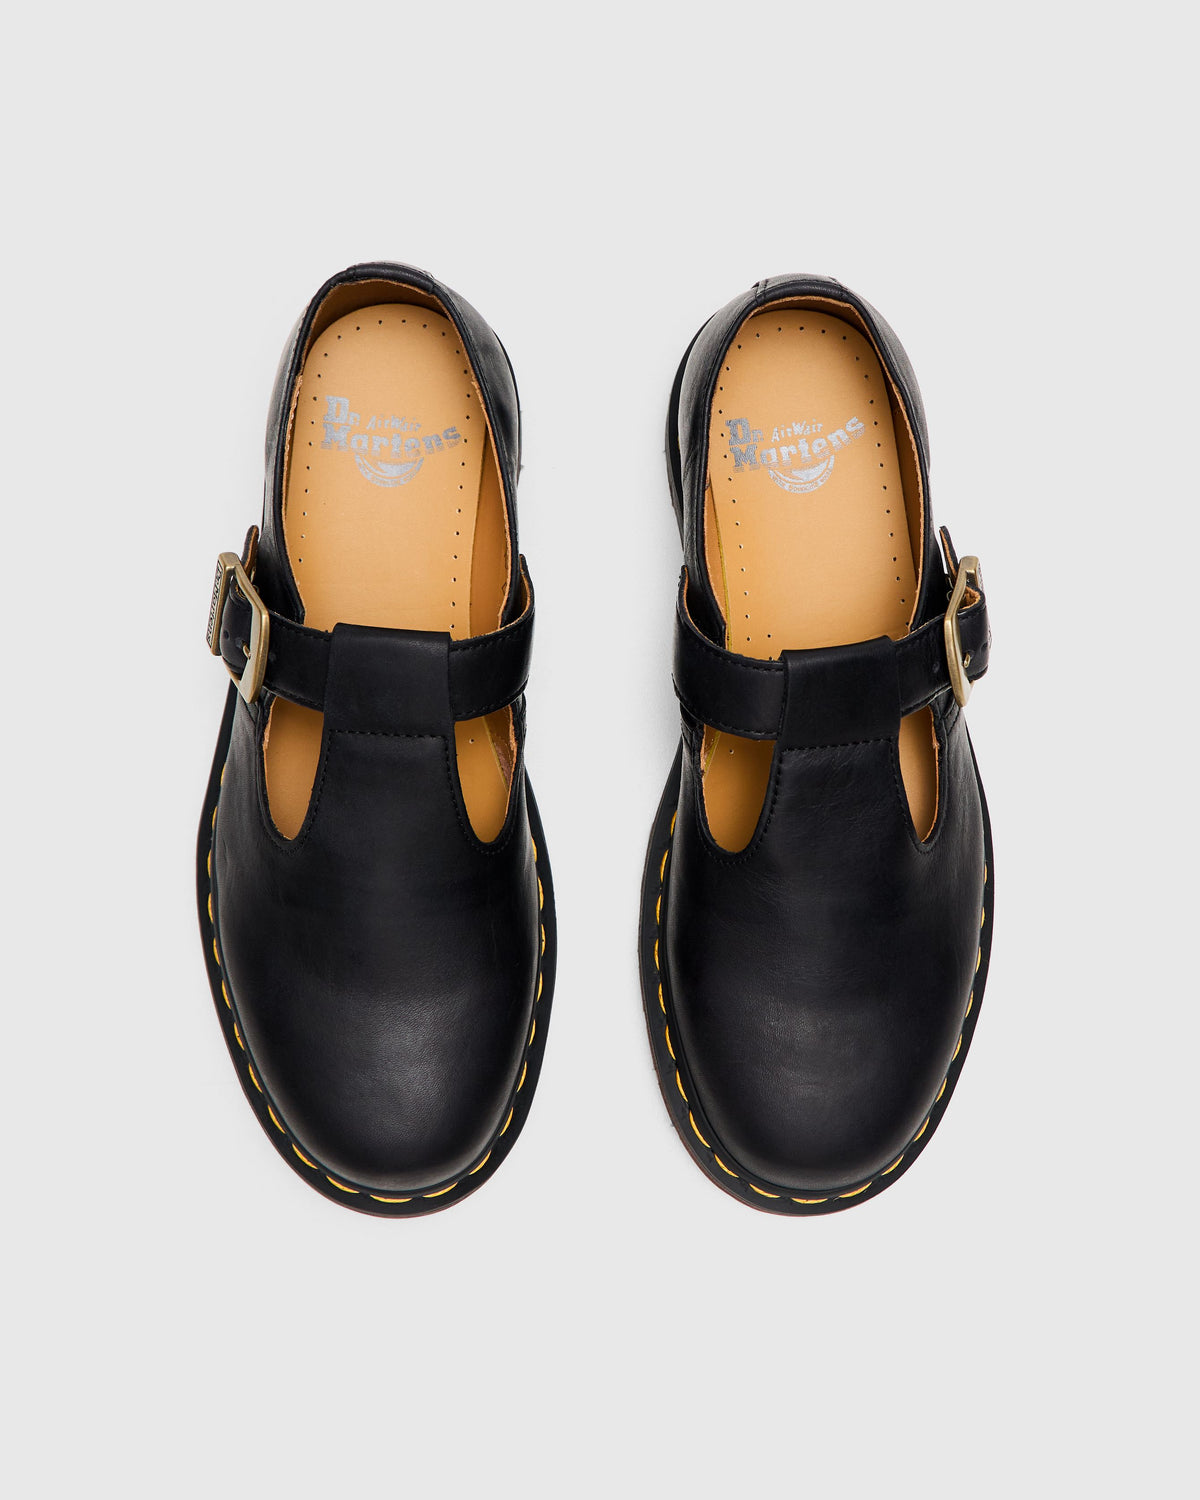 T-Bar Shoe in Black Regency Calf